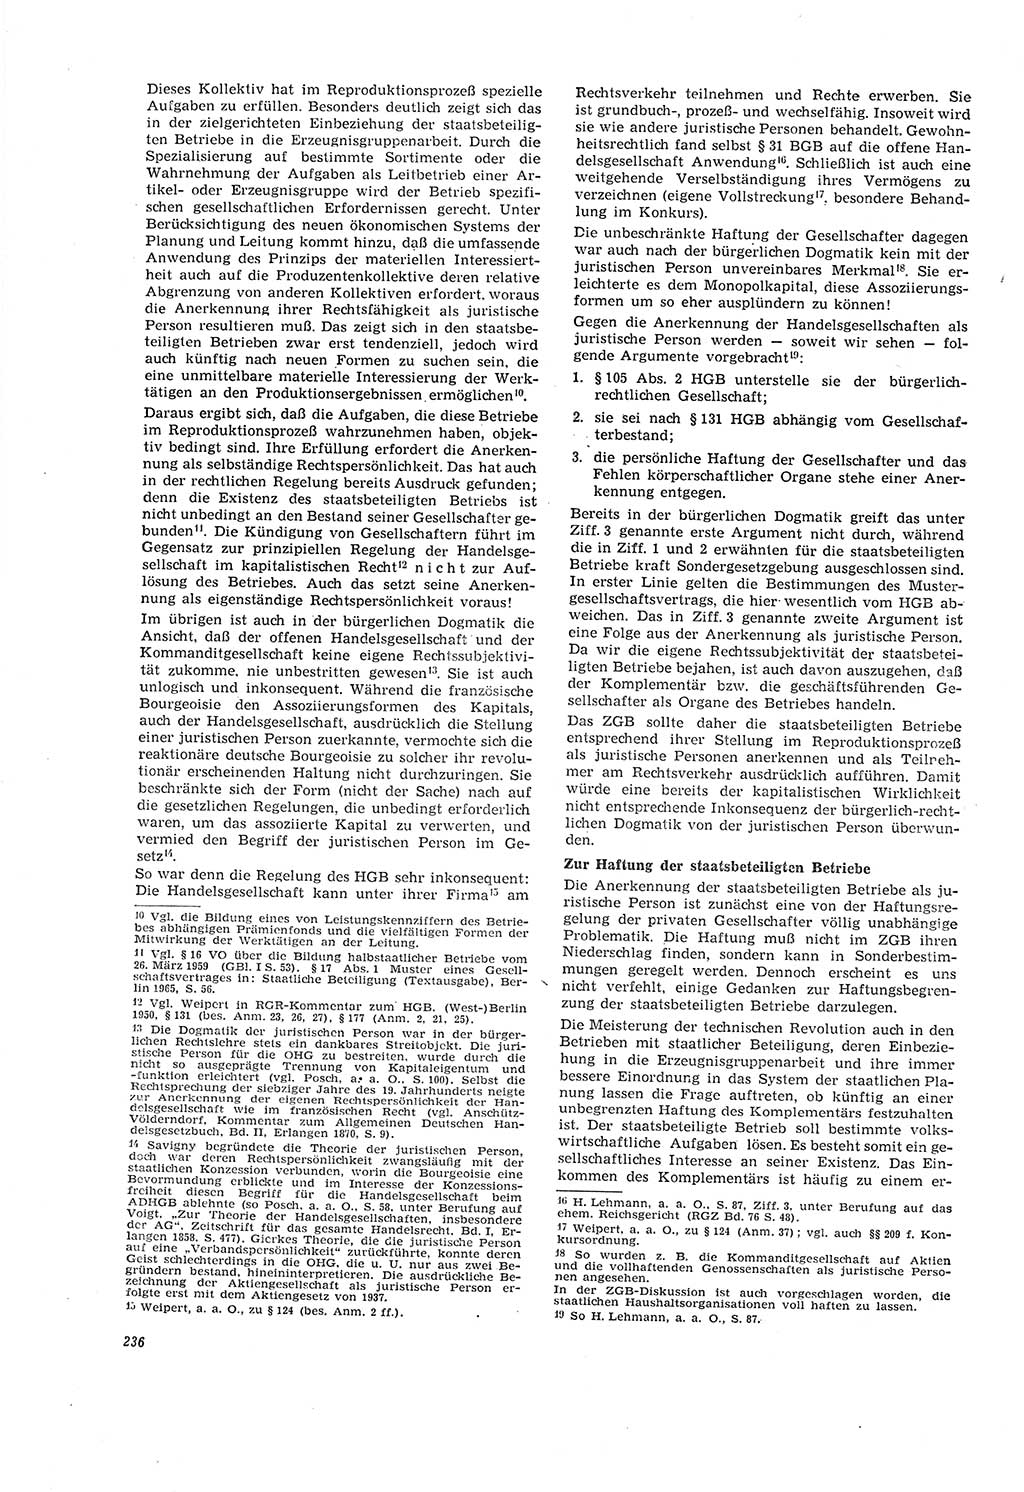 Neue Justiz (NJ), Zeitschrift für Recht und Rechtswissenschaft [Deutsche Demokratische Republik (DDR)], 20. Jahrgang 1966, Seite 236 (NJ DDR 1966, S. 236)